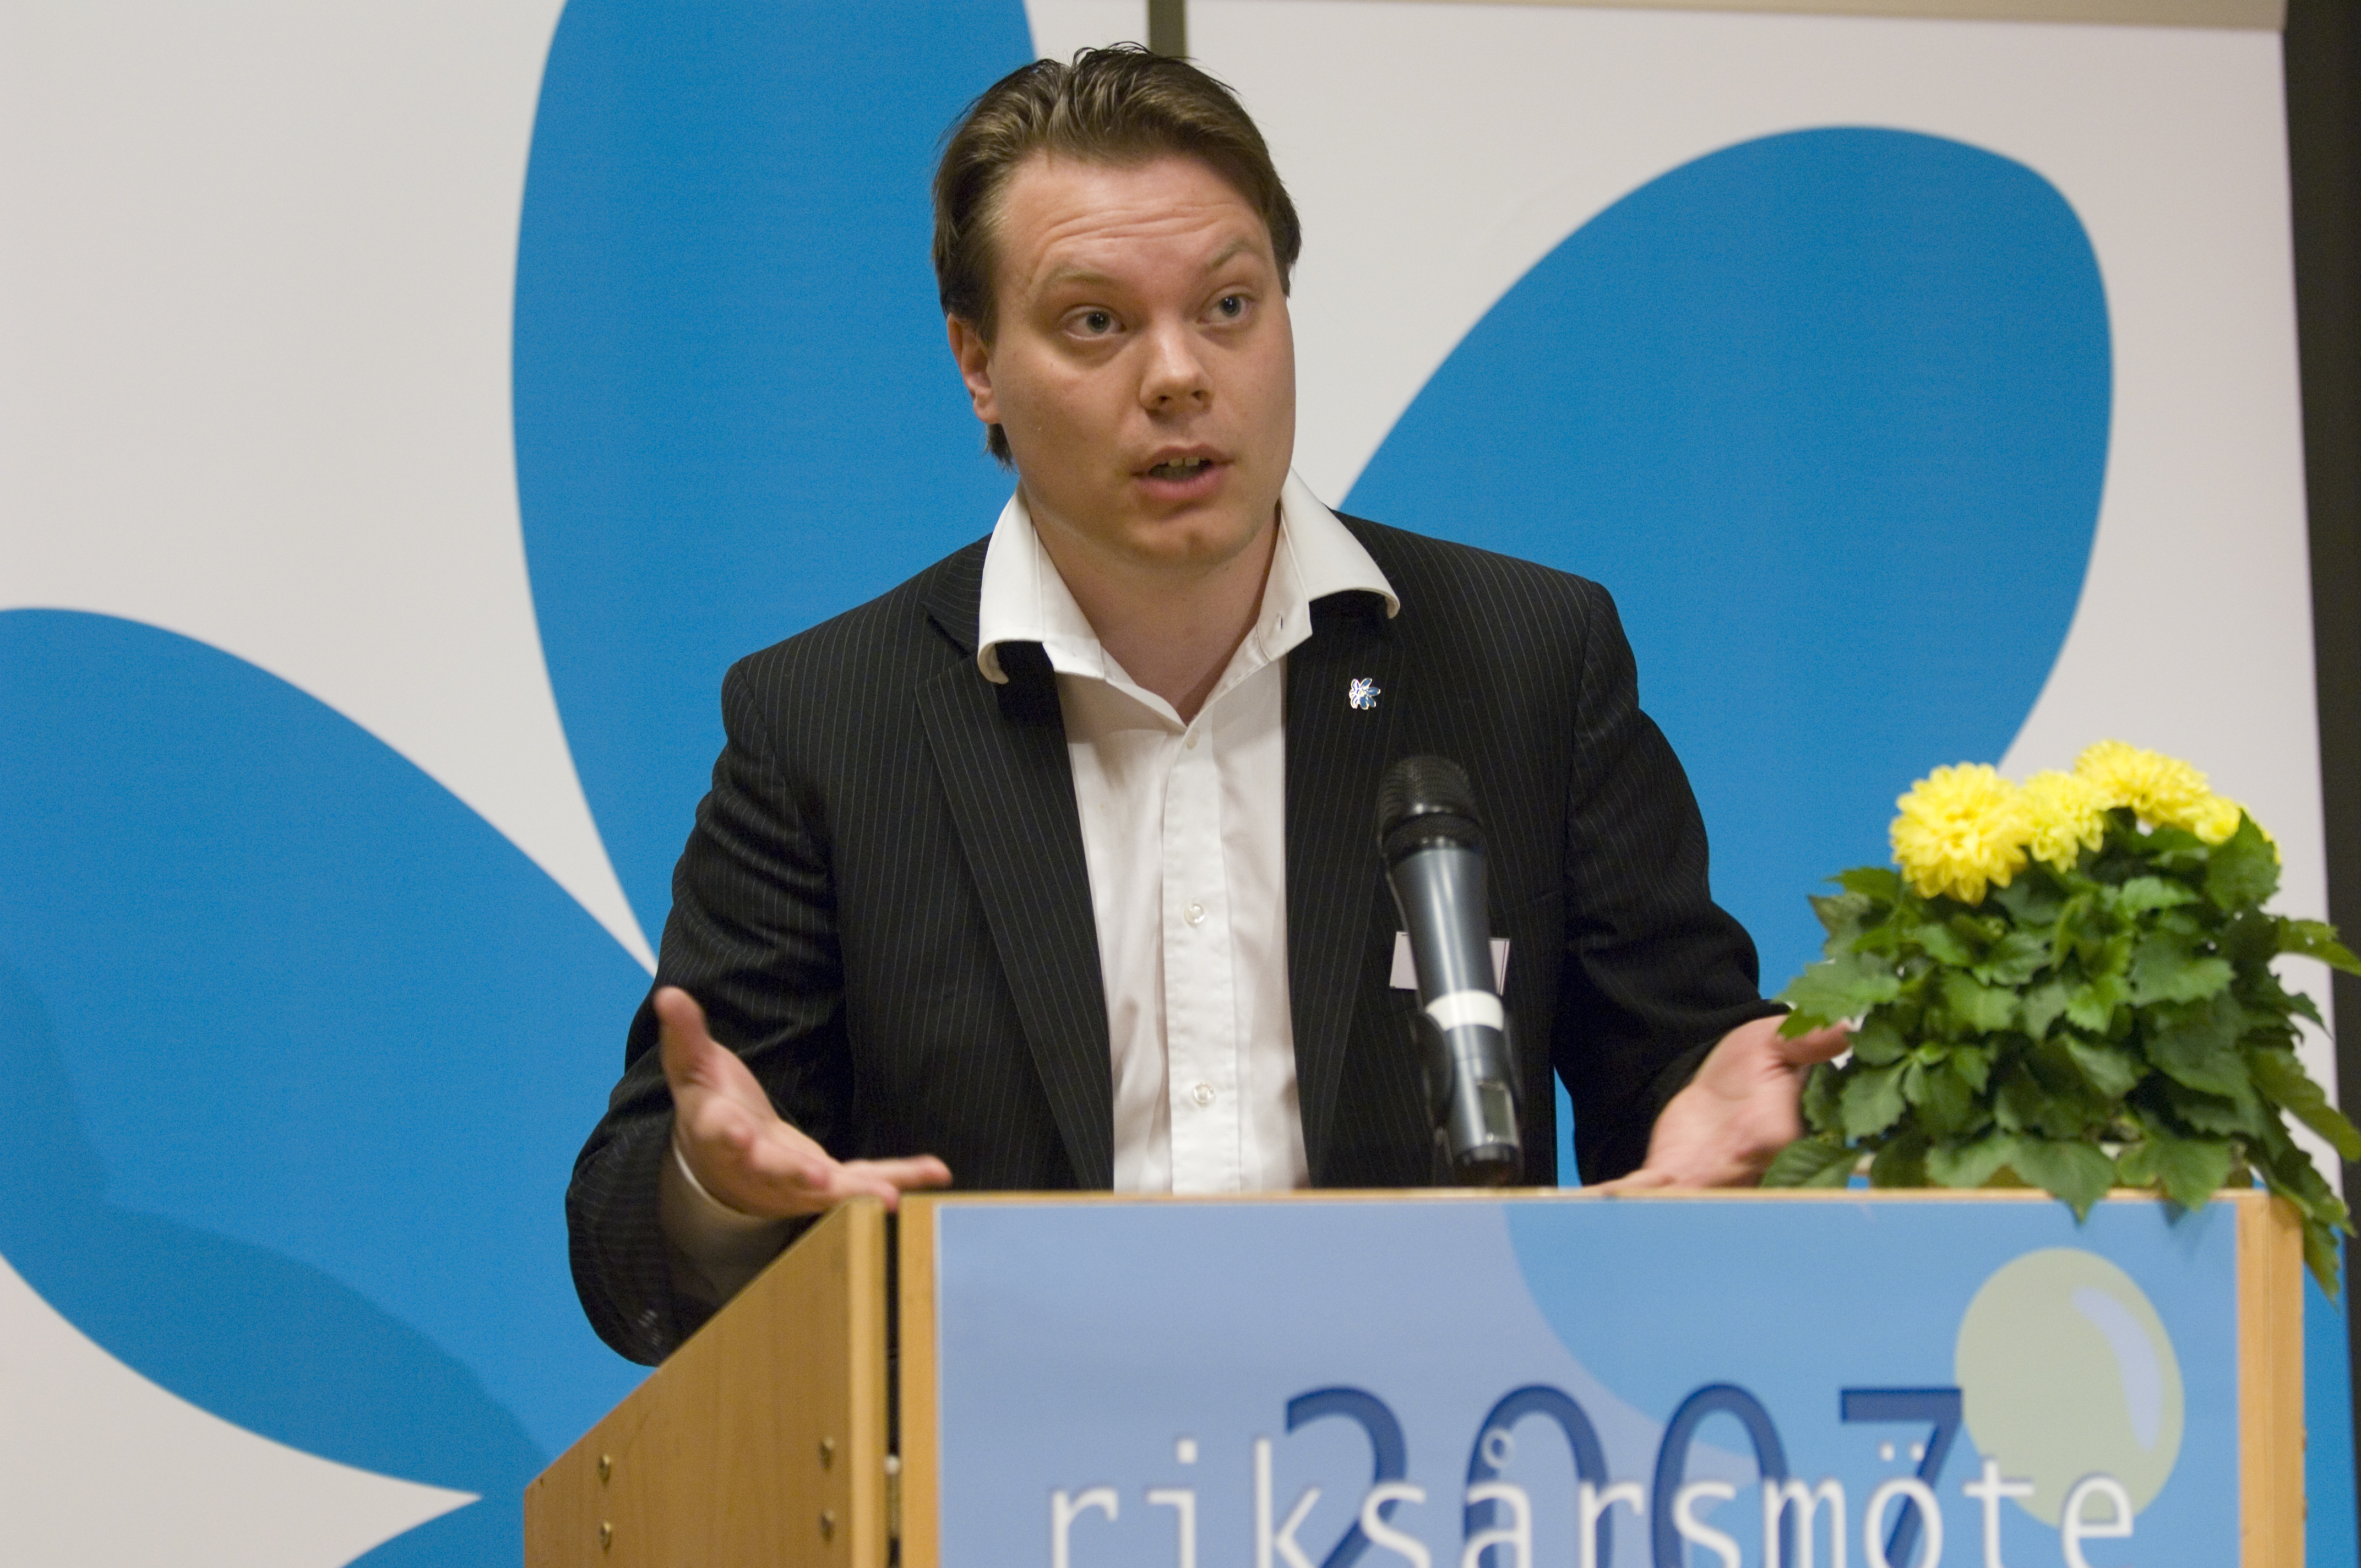 Martin Kinnunen tror att Per-Arne Wahlberg är missnöjd med sin roll i partiet.